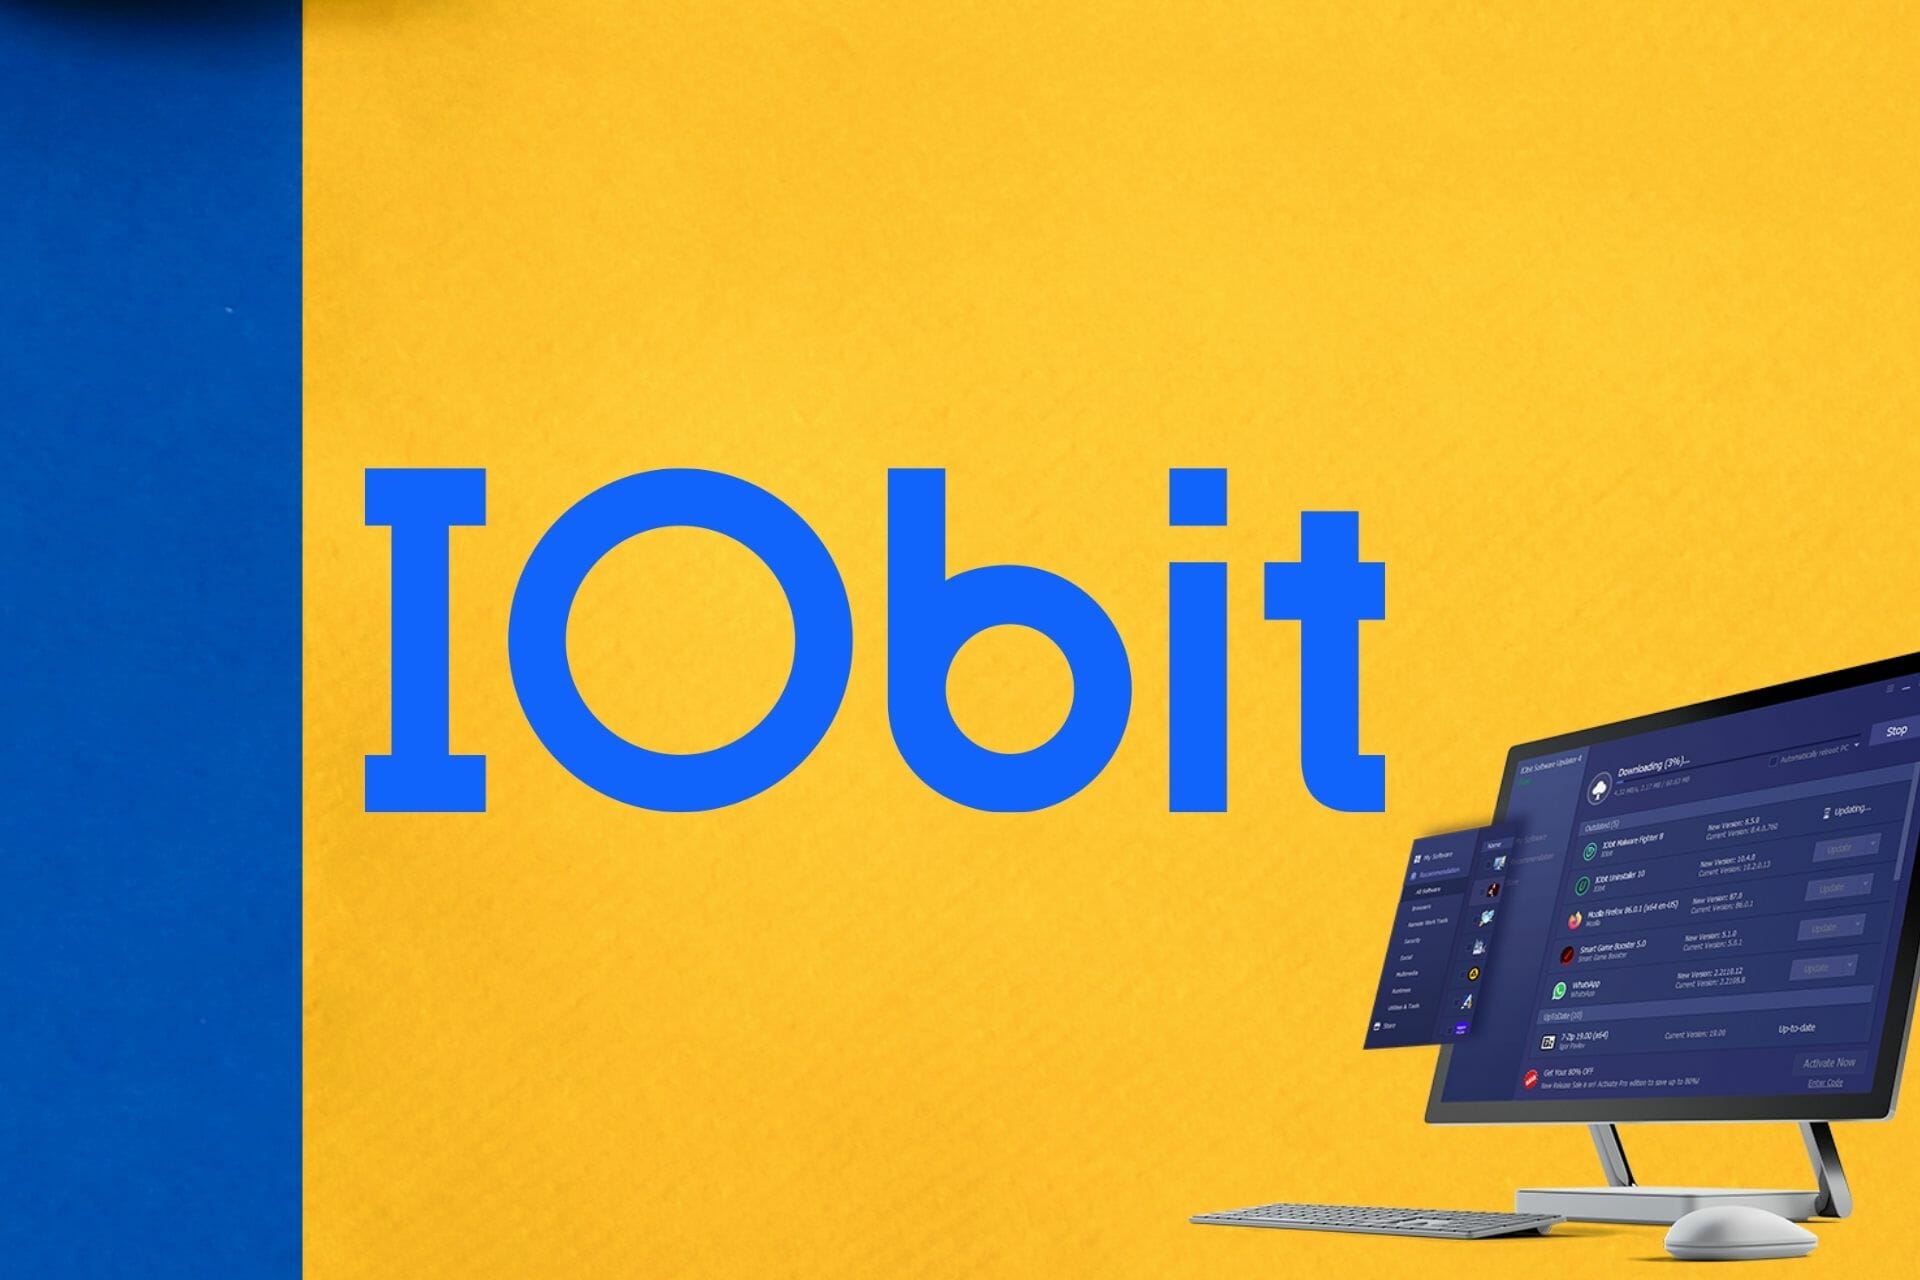 IOBit best deal